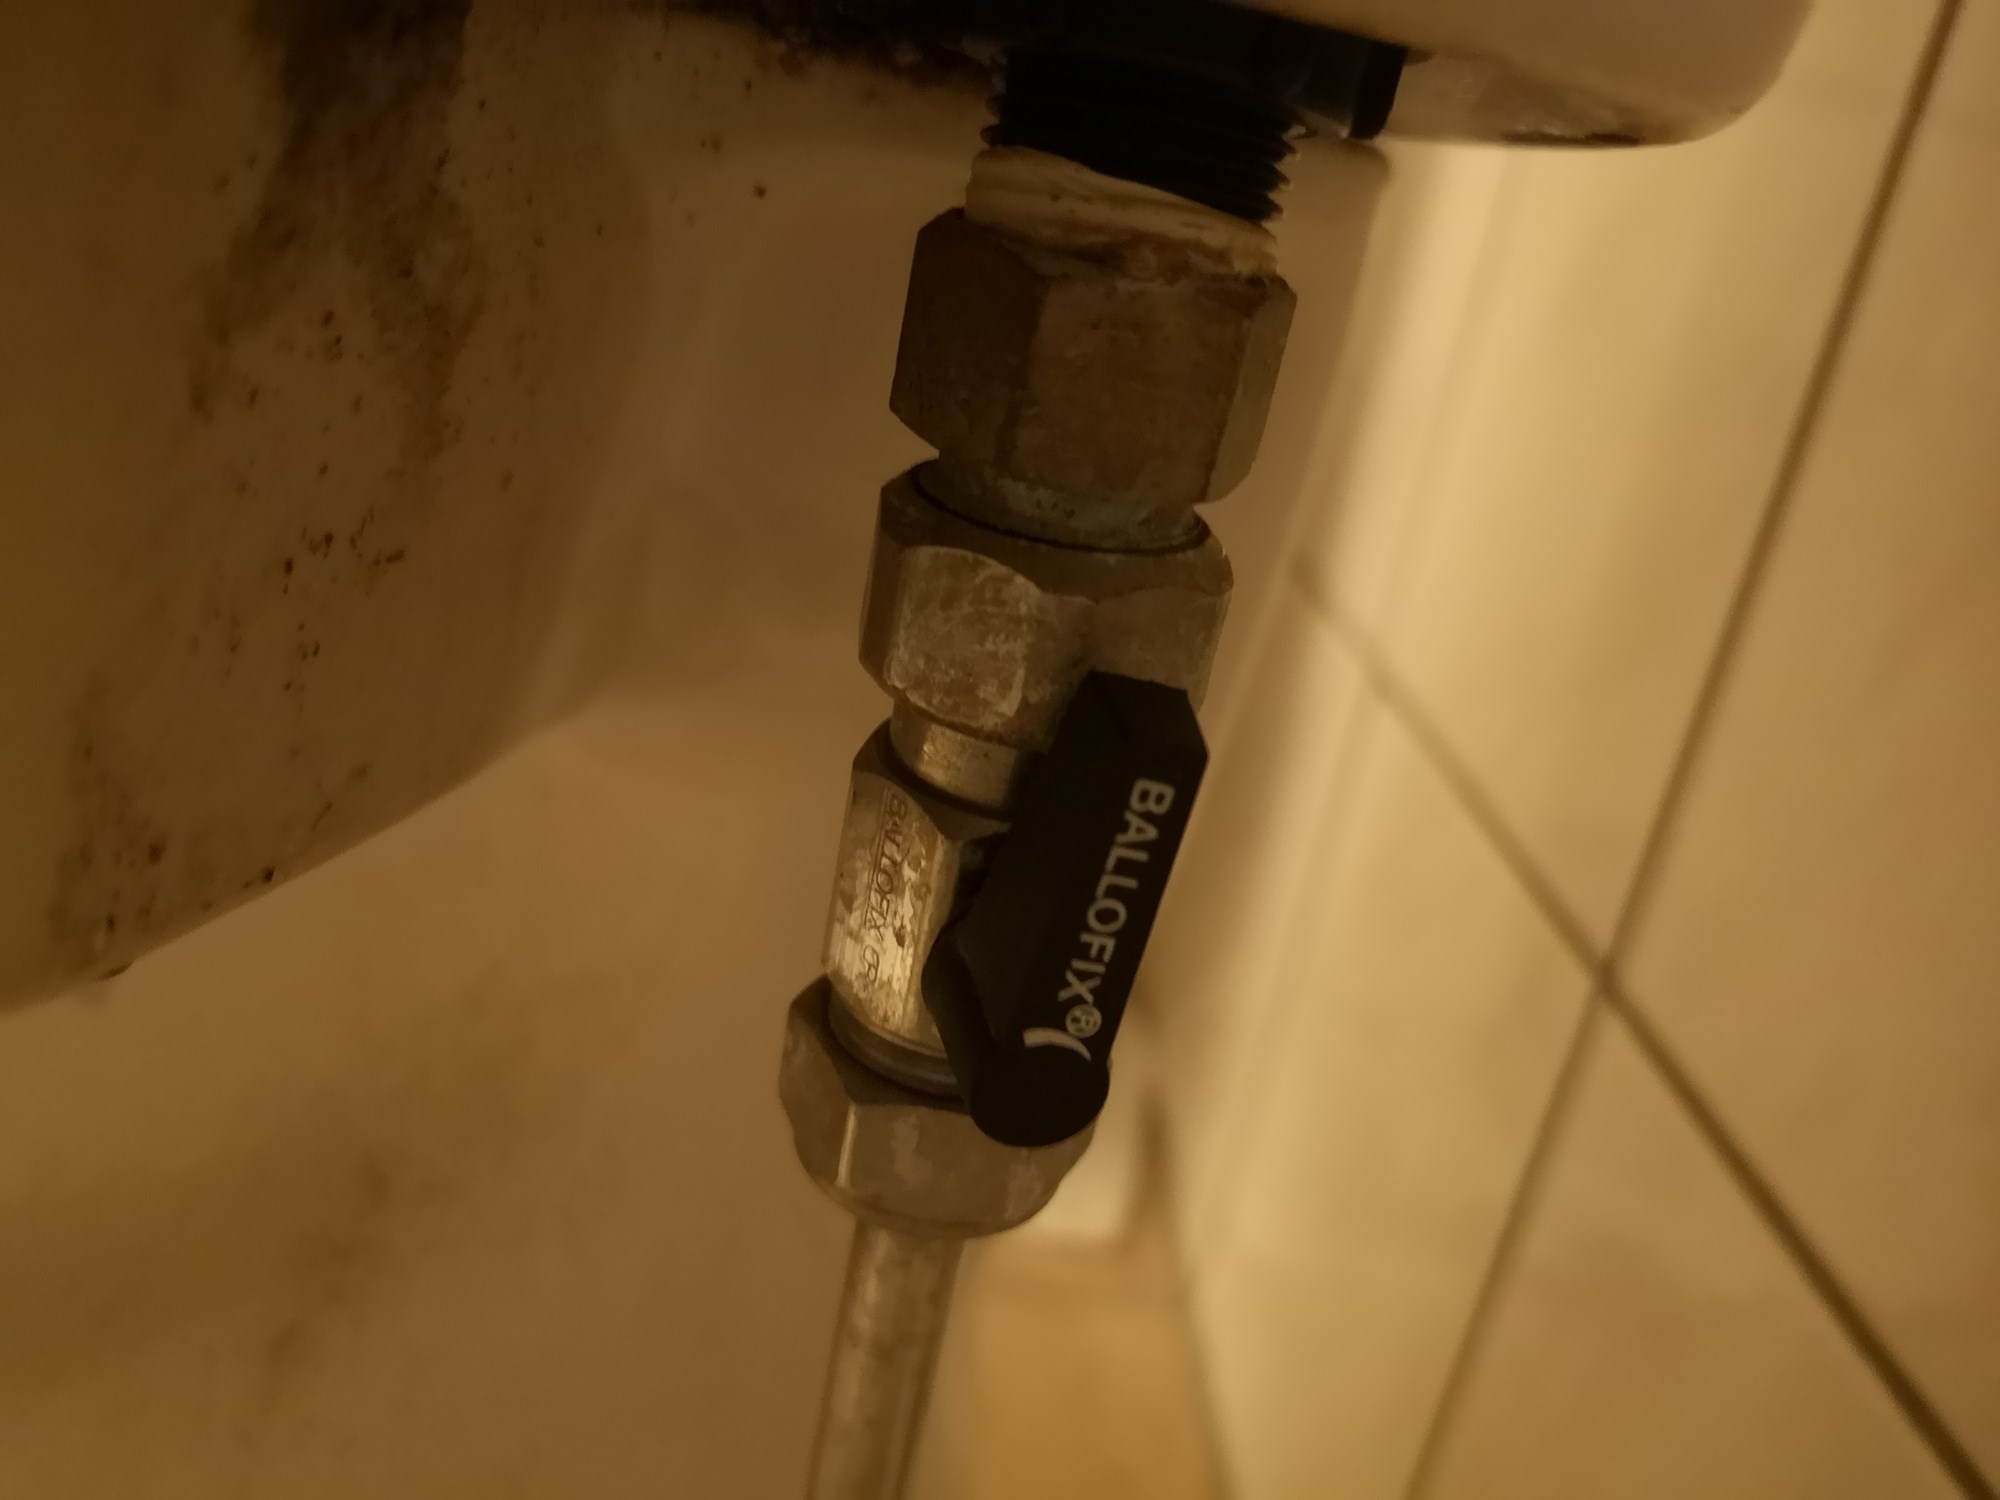 Hvordan løsne gammel vanntilkobling på toalett - IMG_20210514_092519.jpg - titommeltotteravogtil